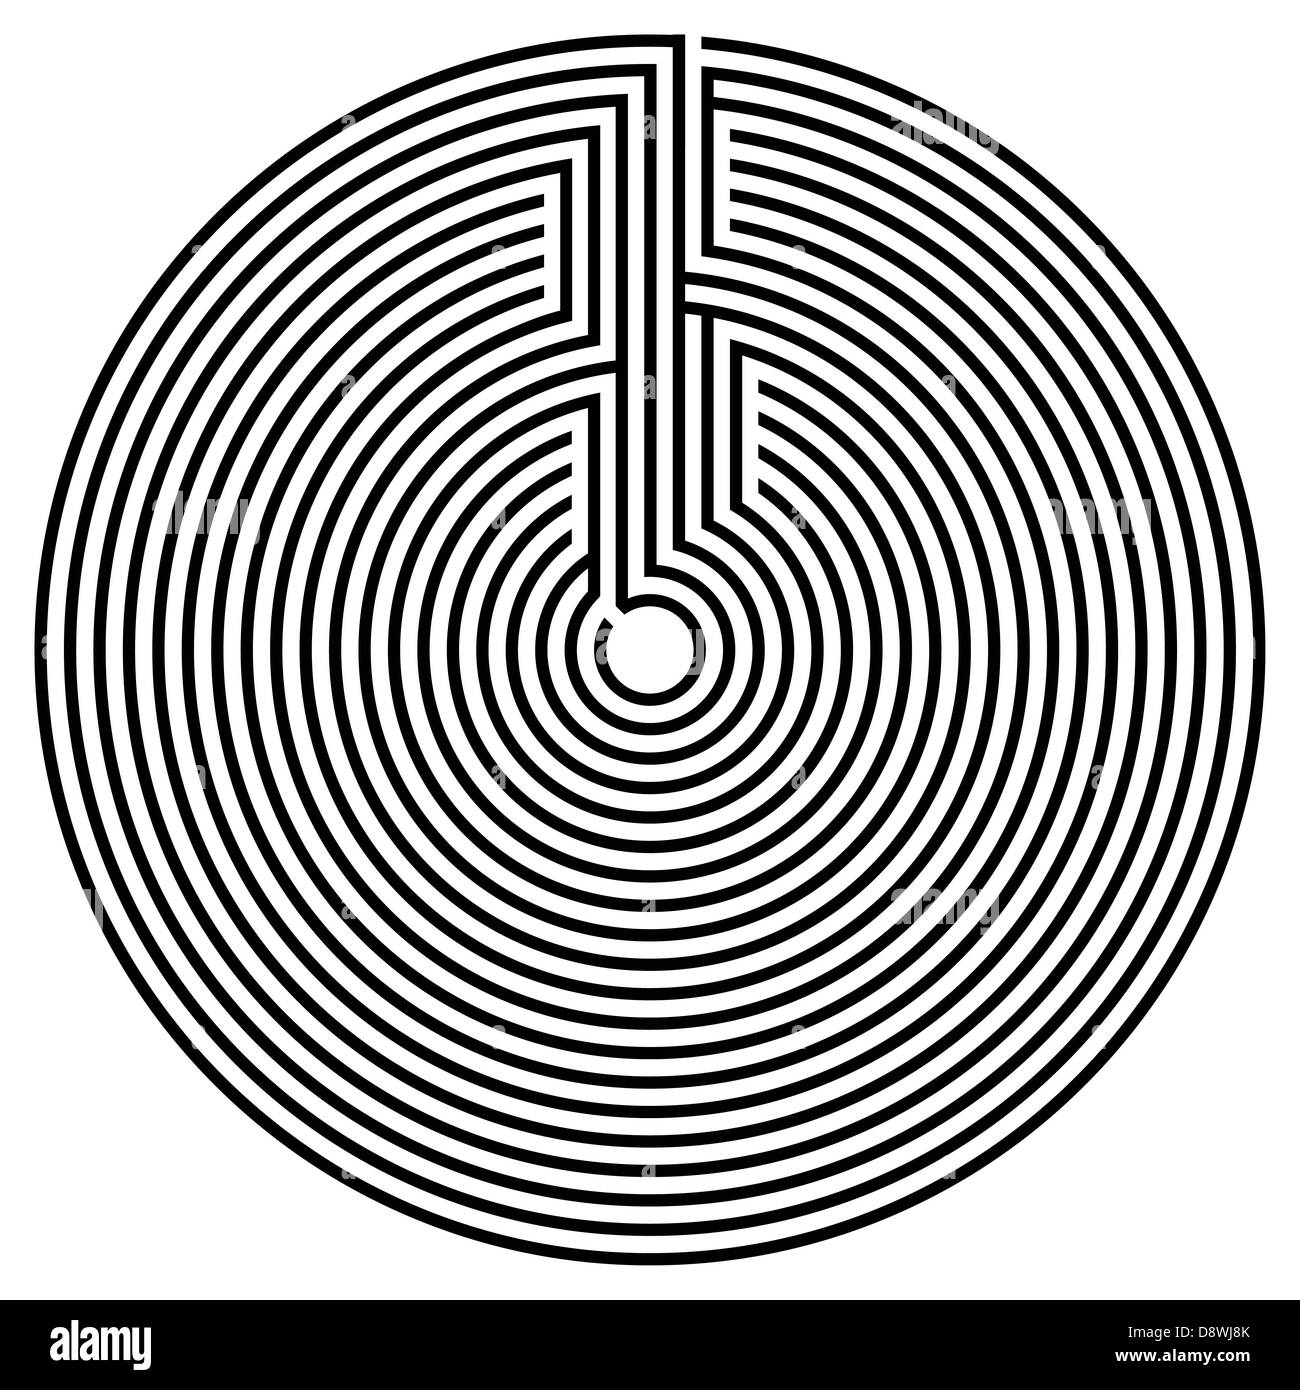 Labyrinthe Labyrinthe Illustration vectorielles Banque D'Images